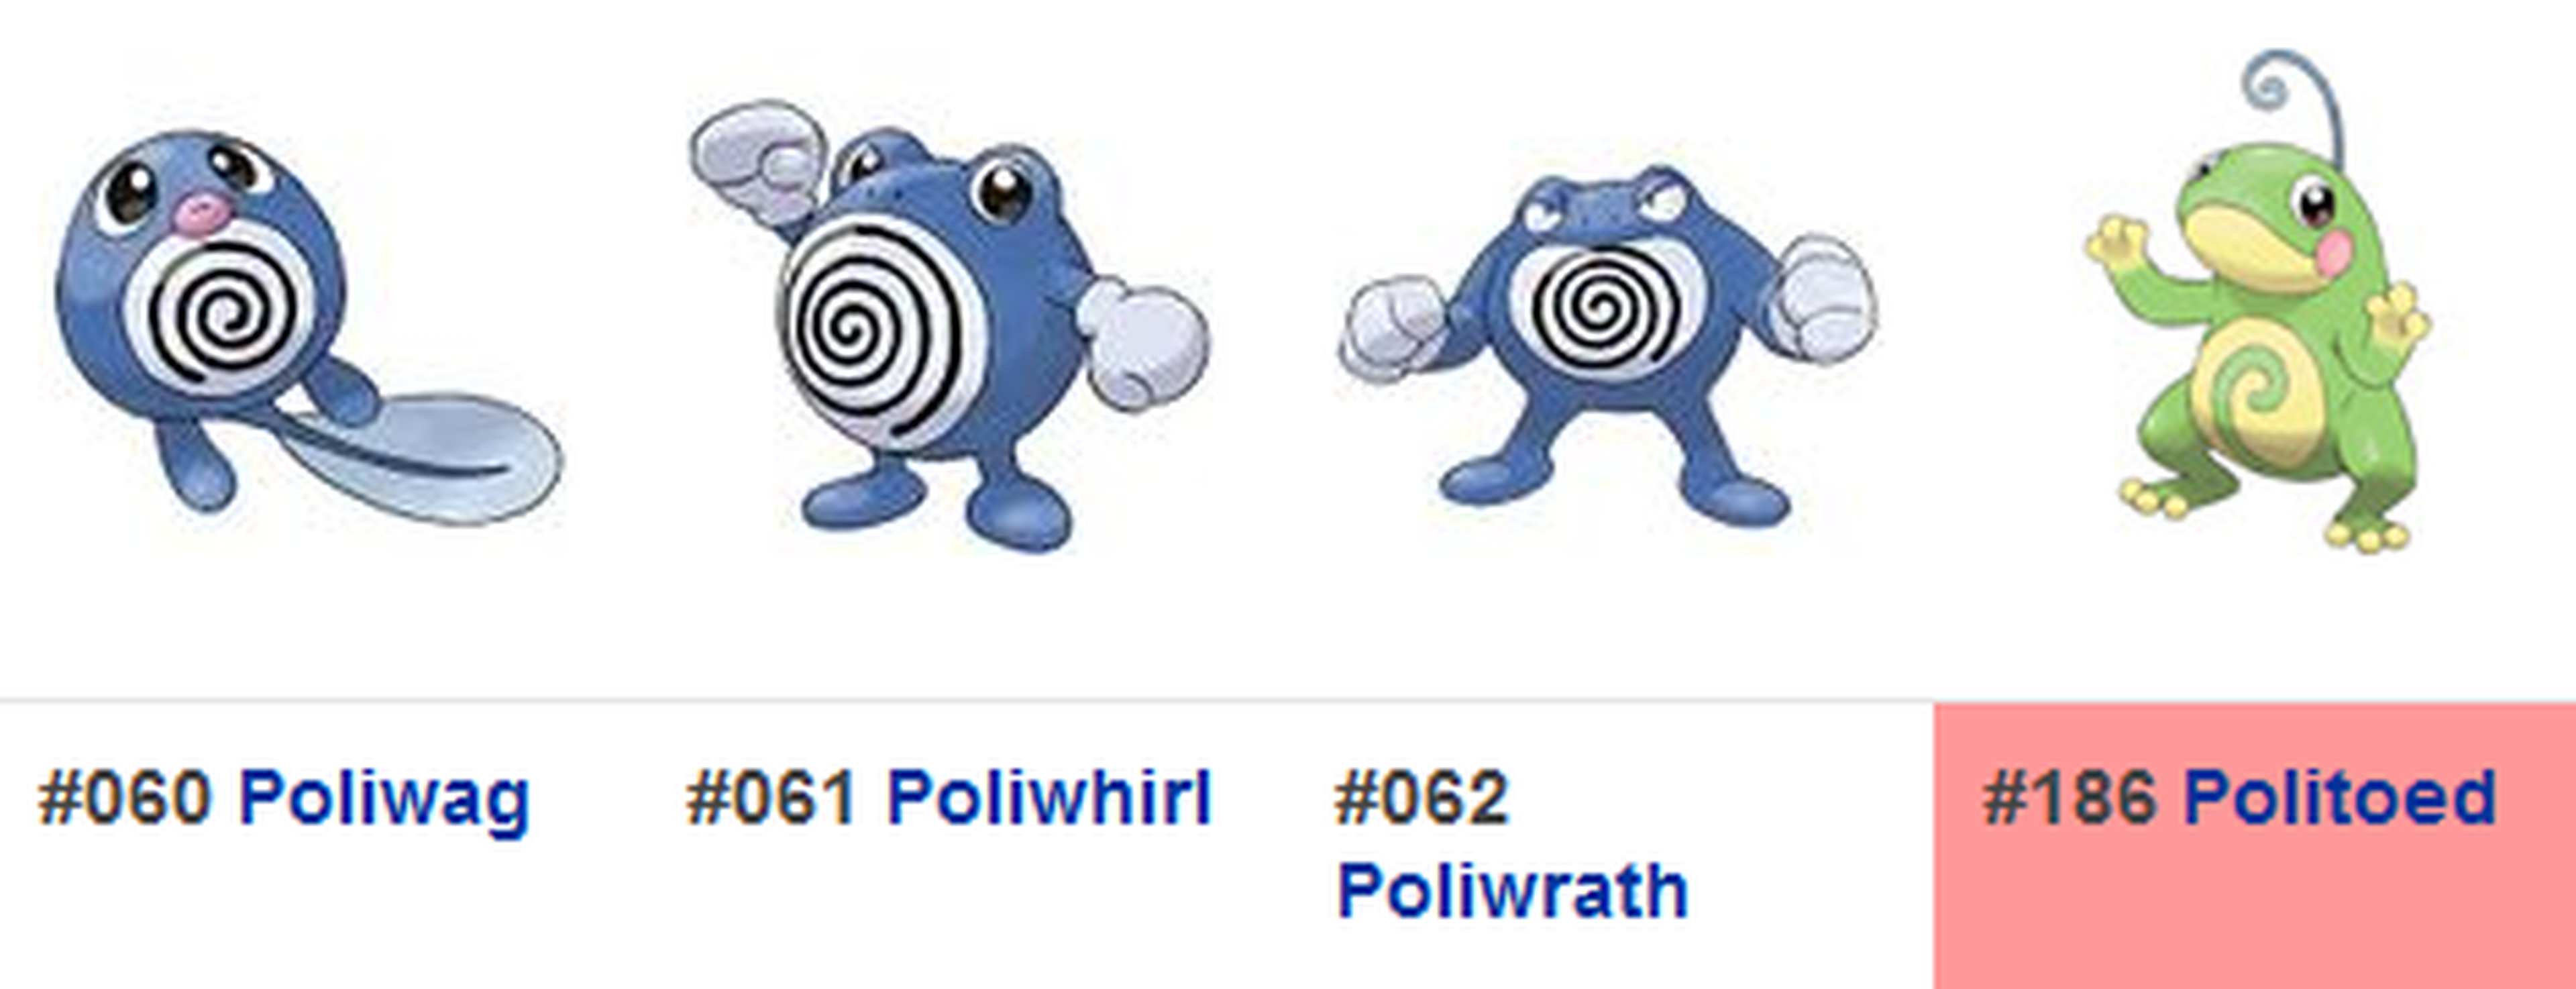 Politoed se incorporaría en la 2ª generación de Pokémon GO